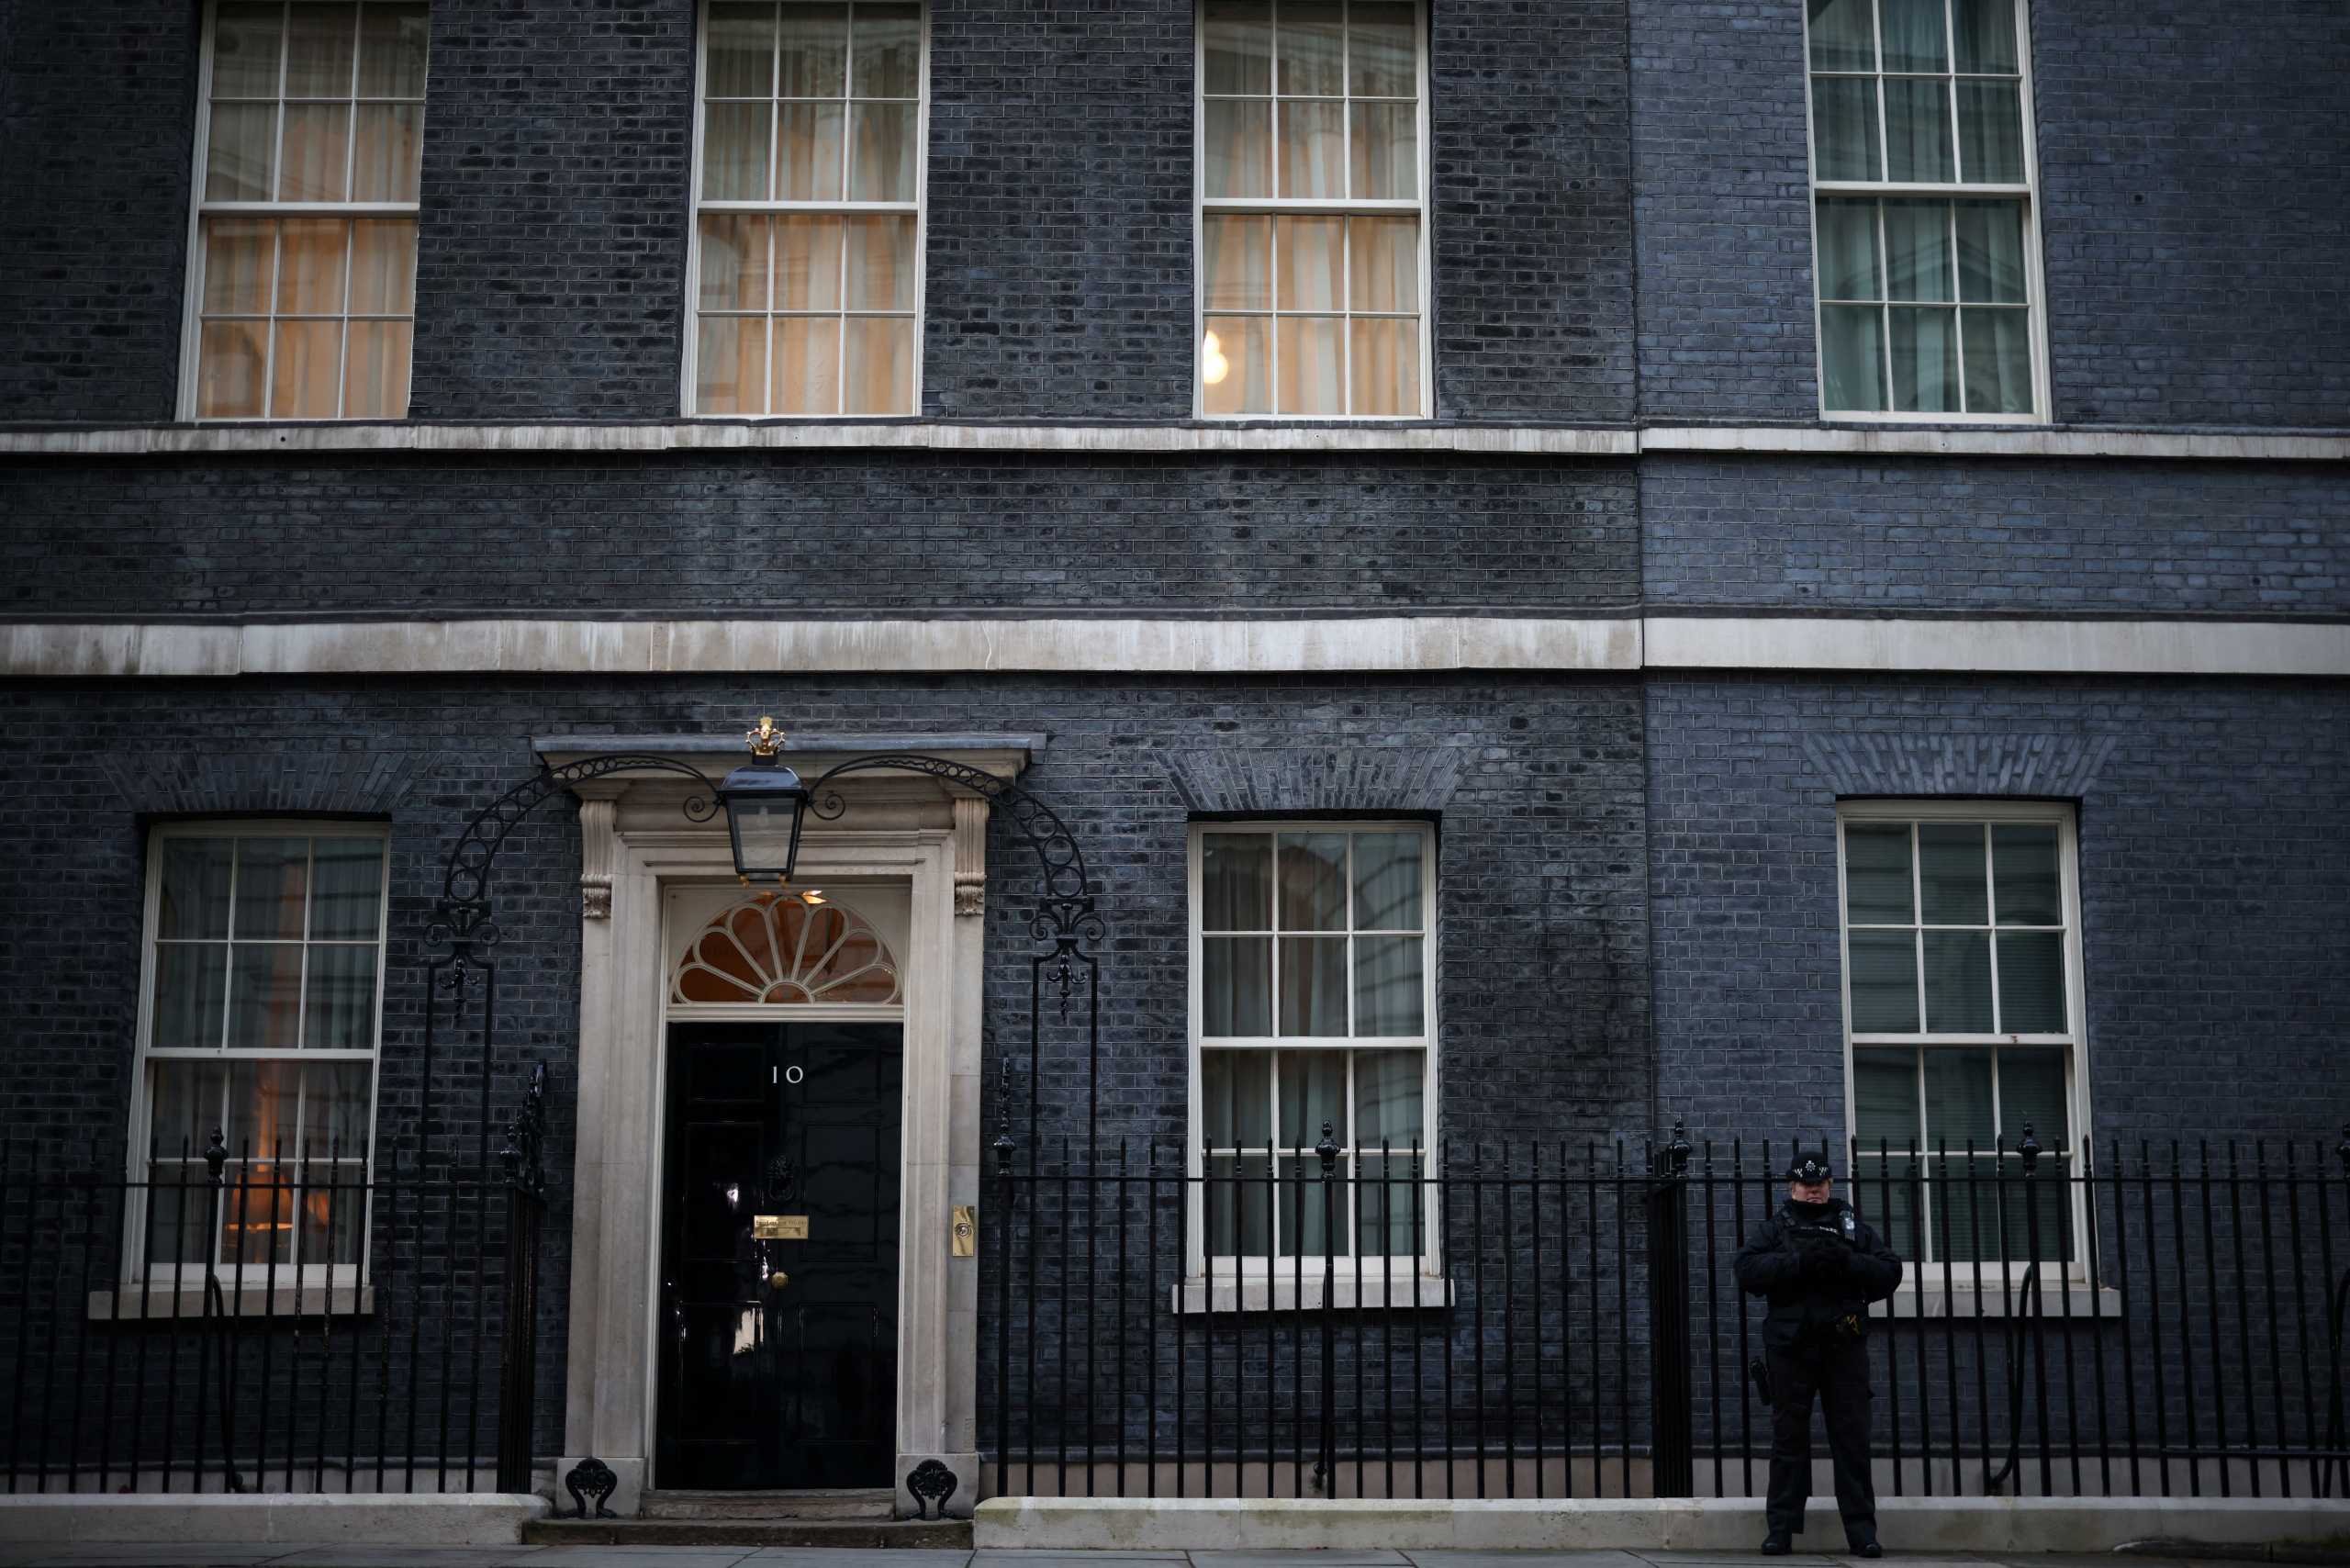 Βρετανία: Έρχεται το ριάλιτι «Make Me Prime Minister» όπου πολίτες θα αποδεικνύουν αν μπορούν να γίνουν πρωθυπουργοί